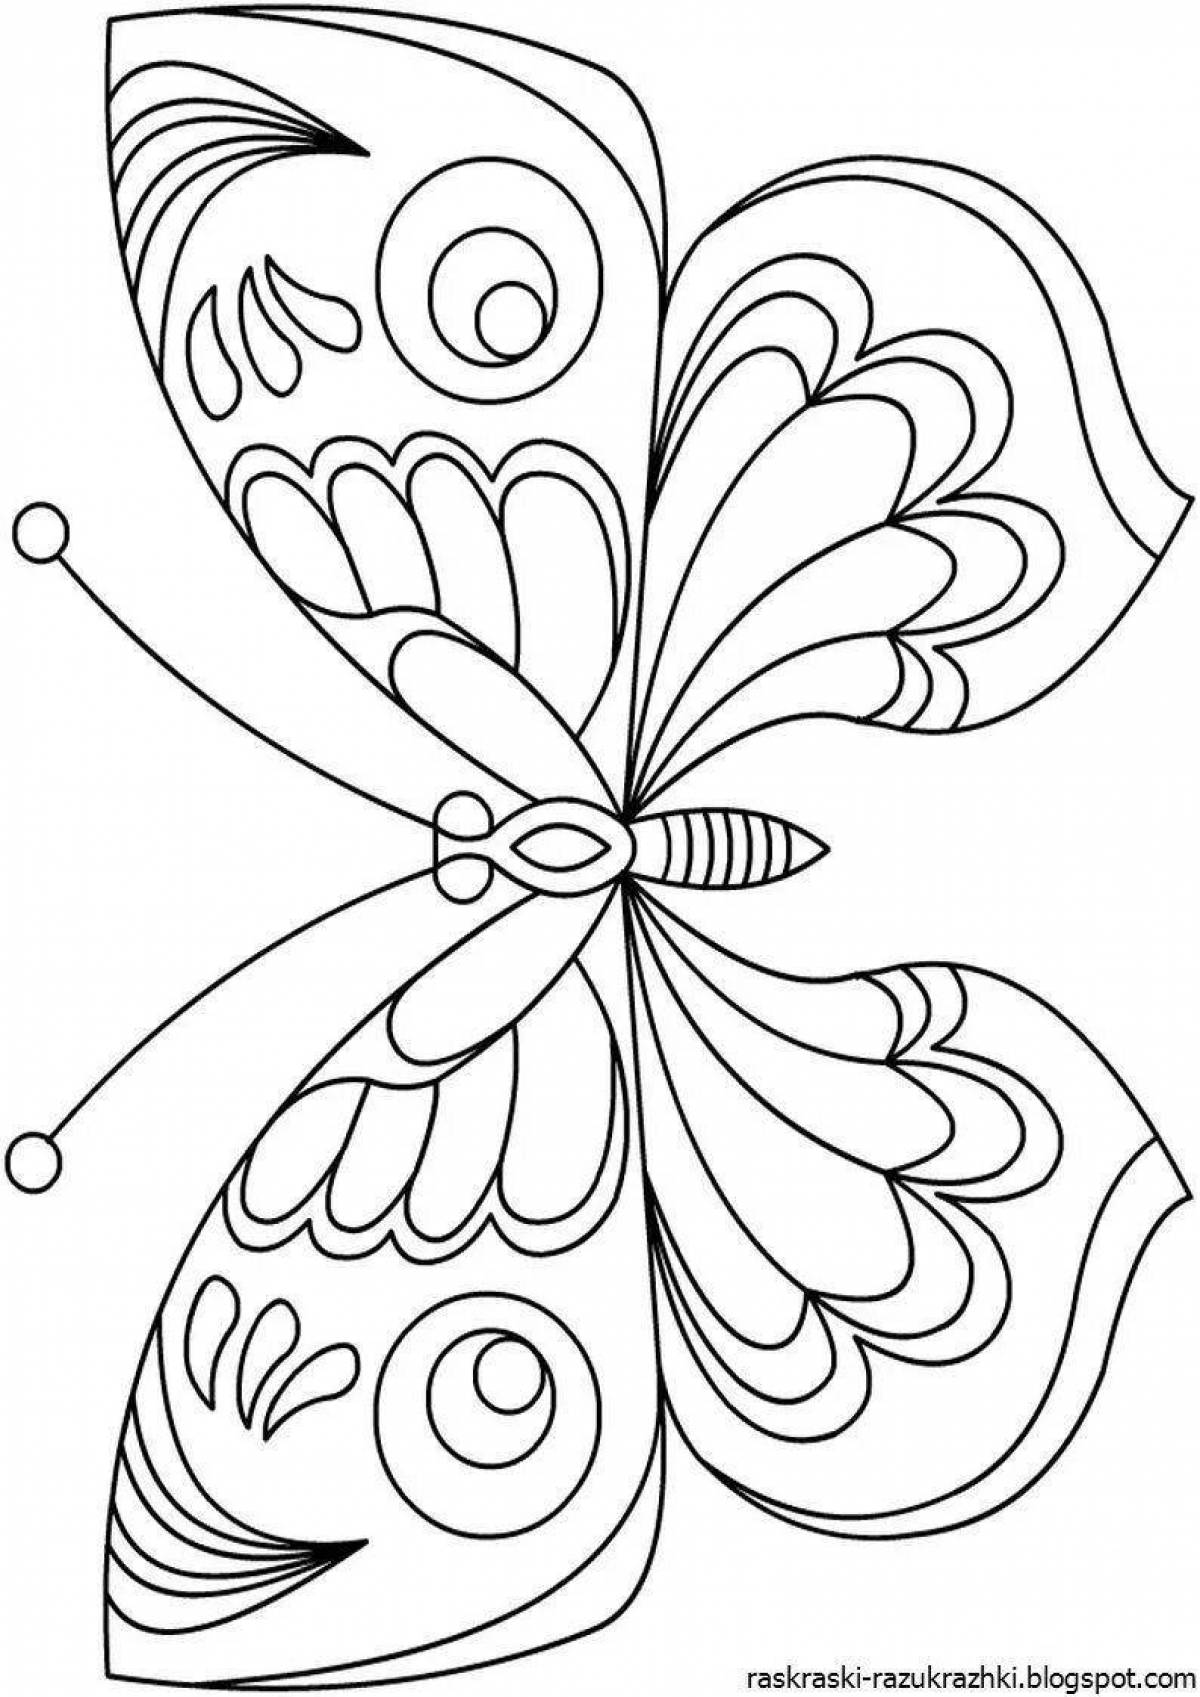 Радостная раскраска крылья бабочки